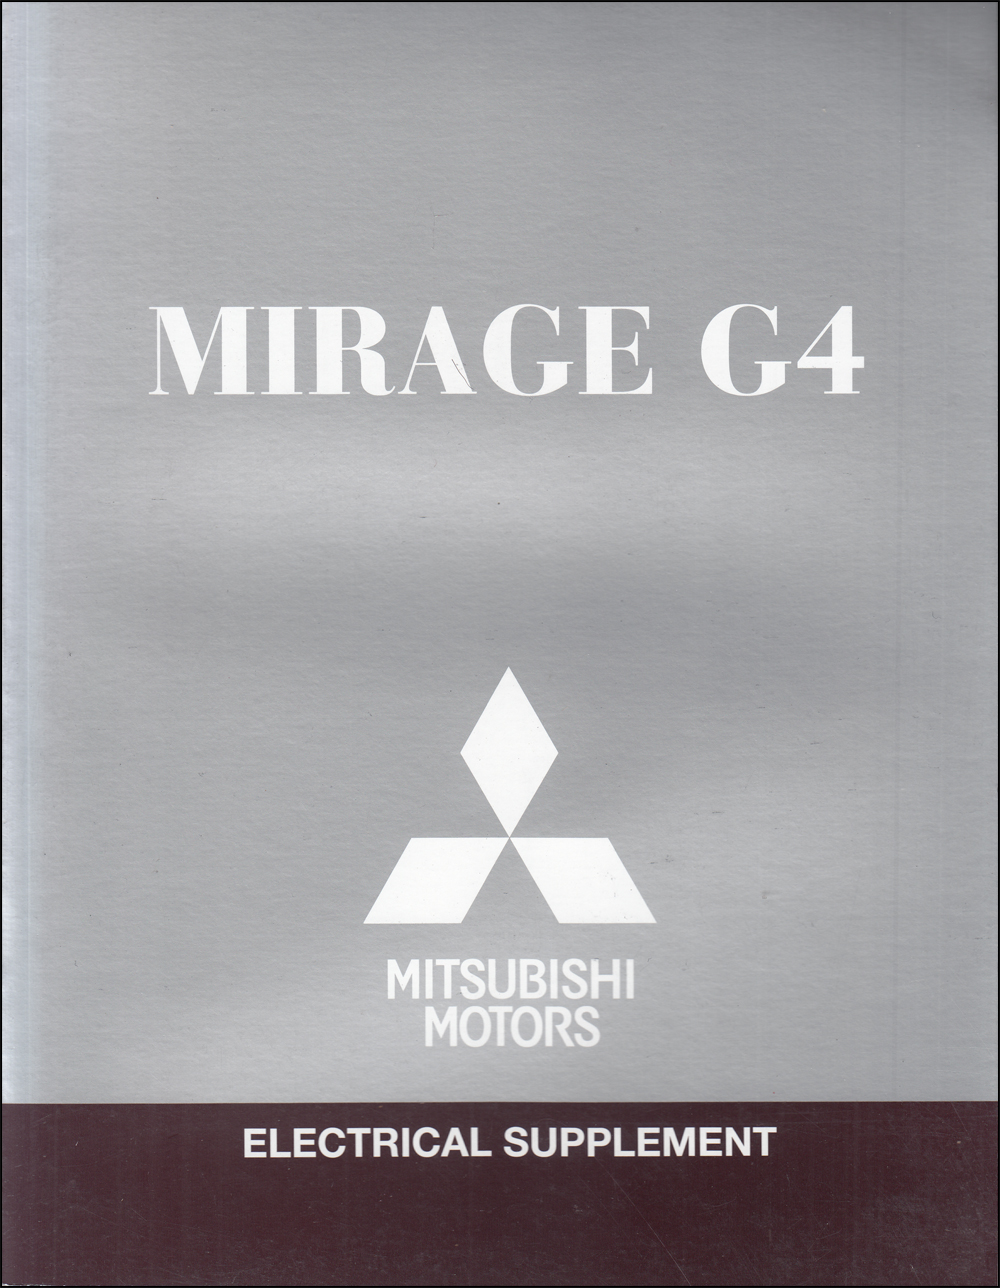 2019 Mitsubishi Mirage G4 Wiring Diagram Manual Original 